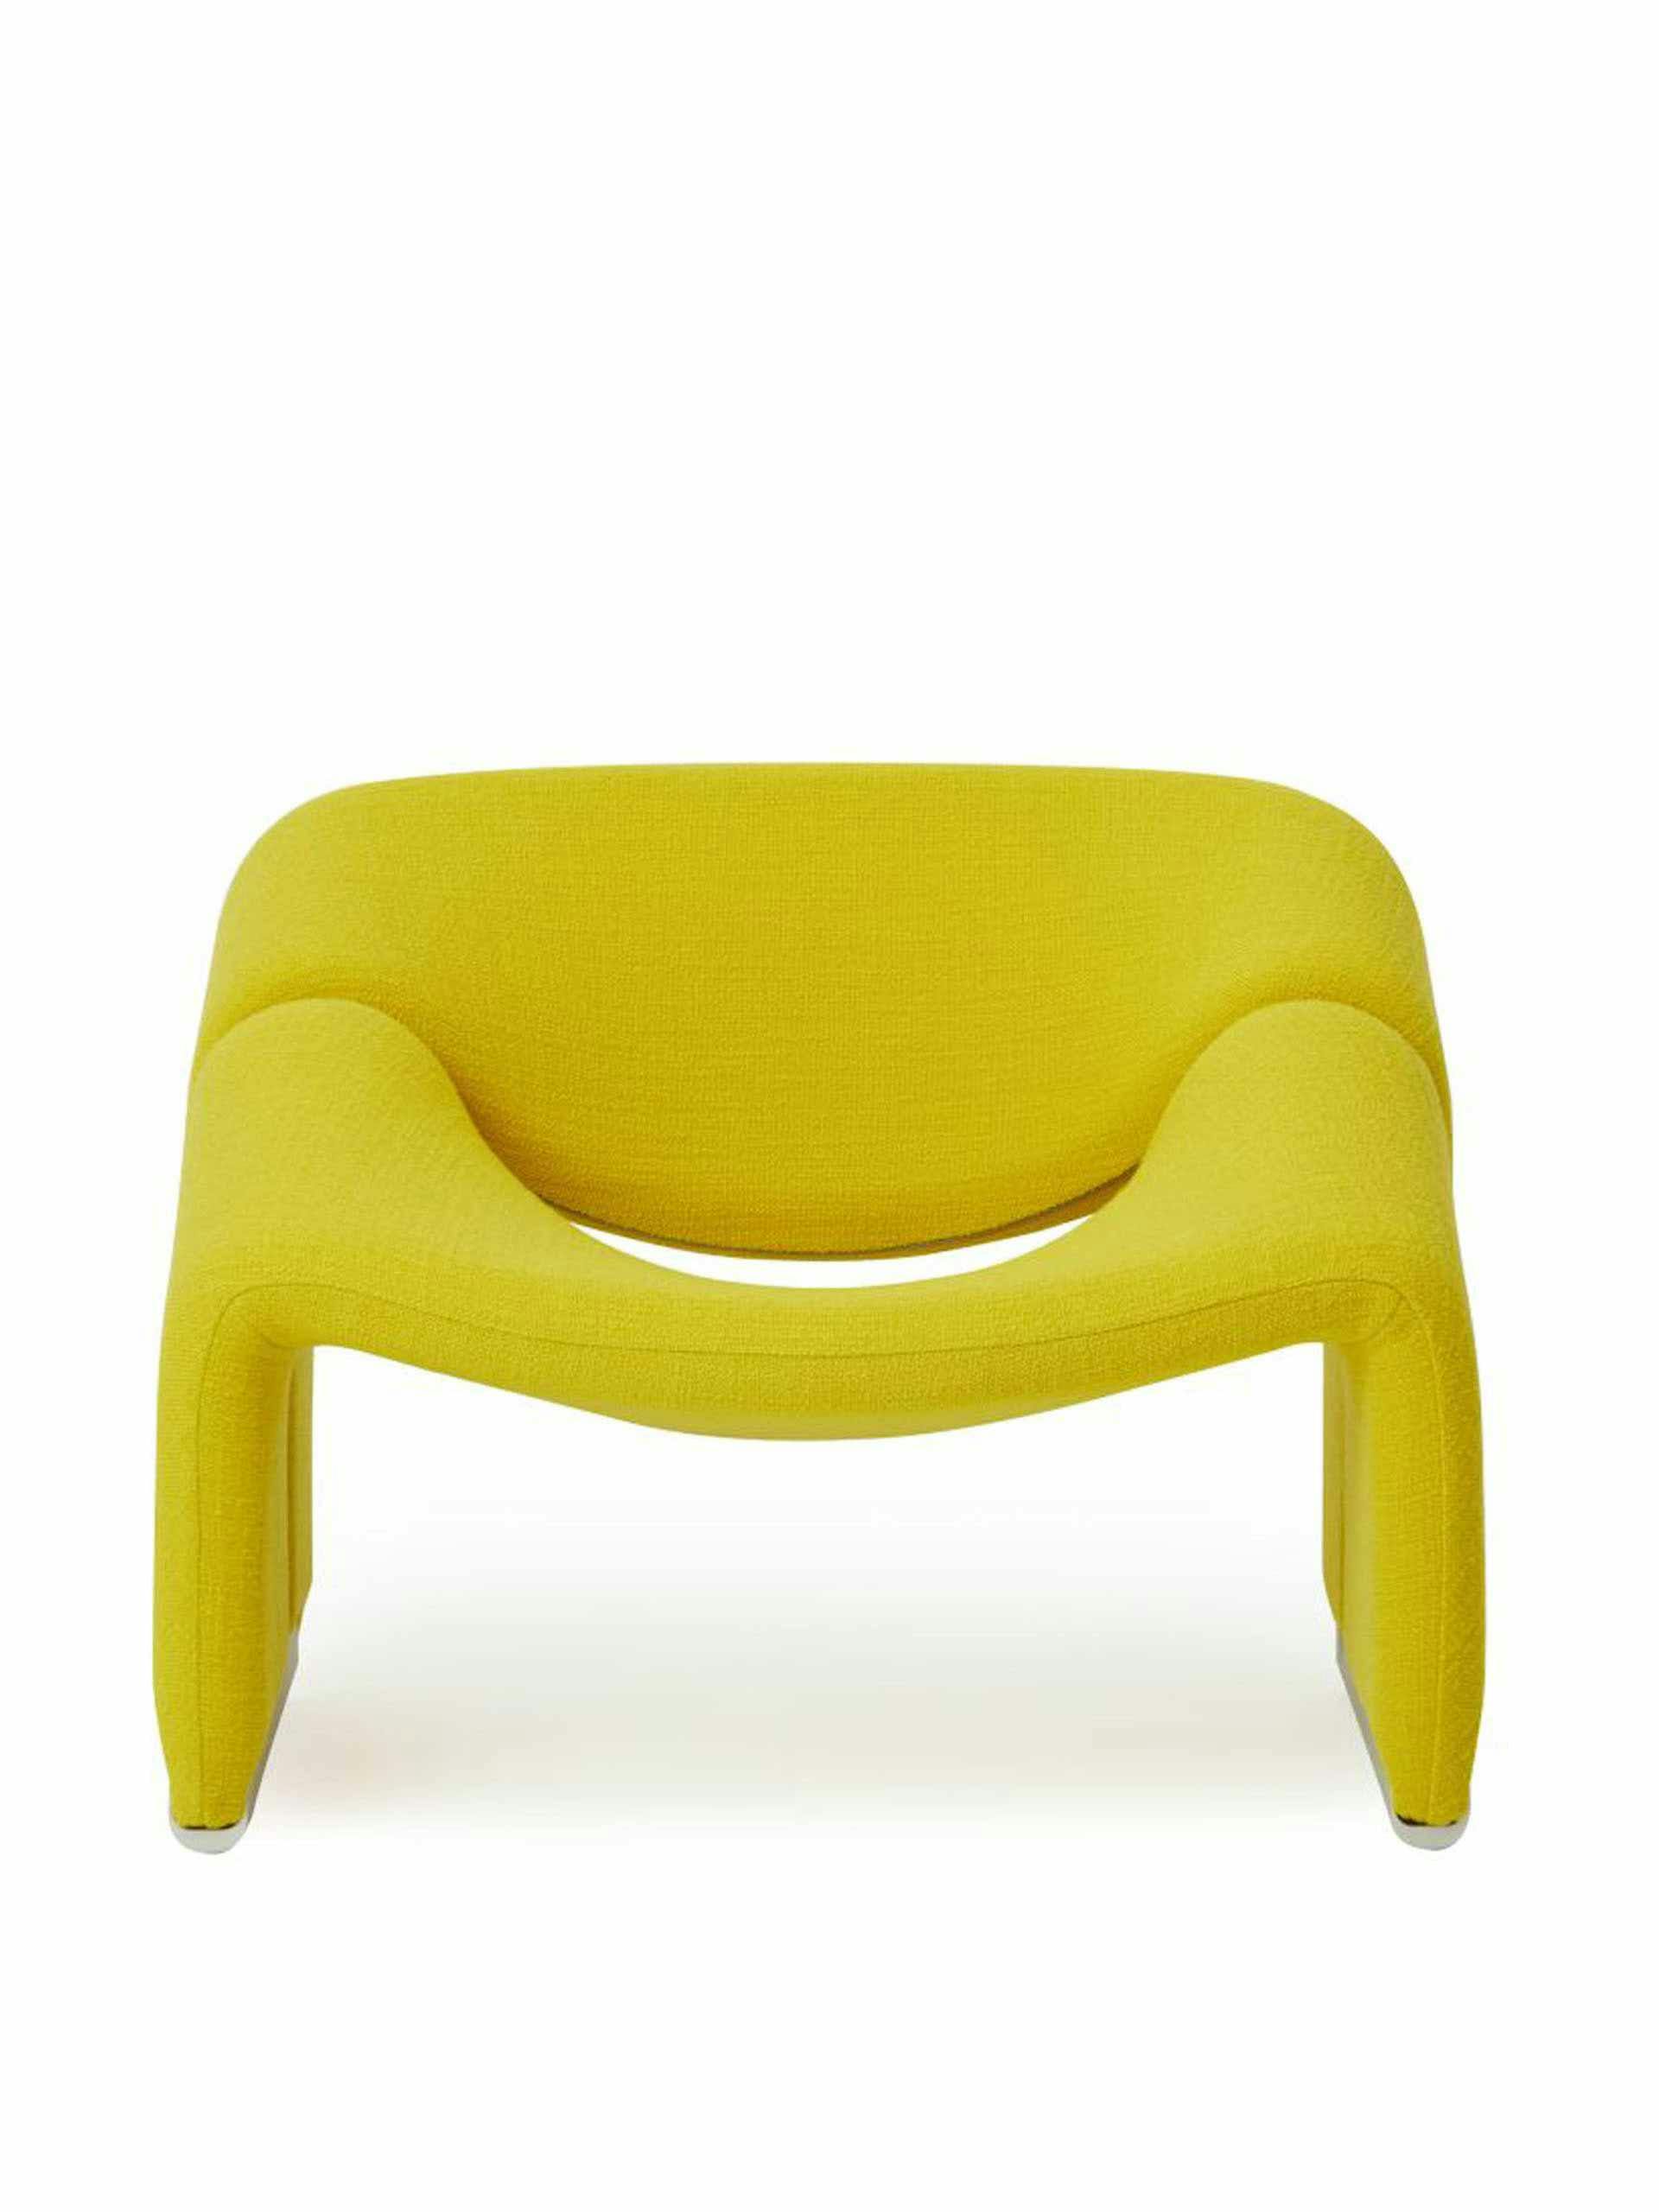 Yellow sculptural chair